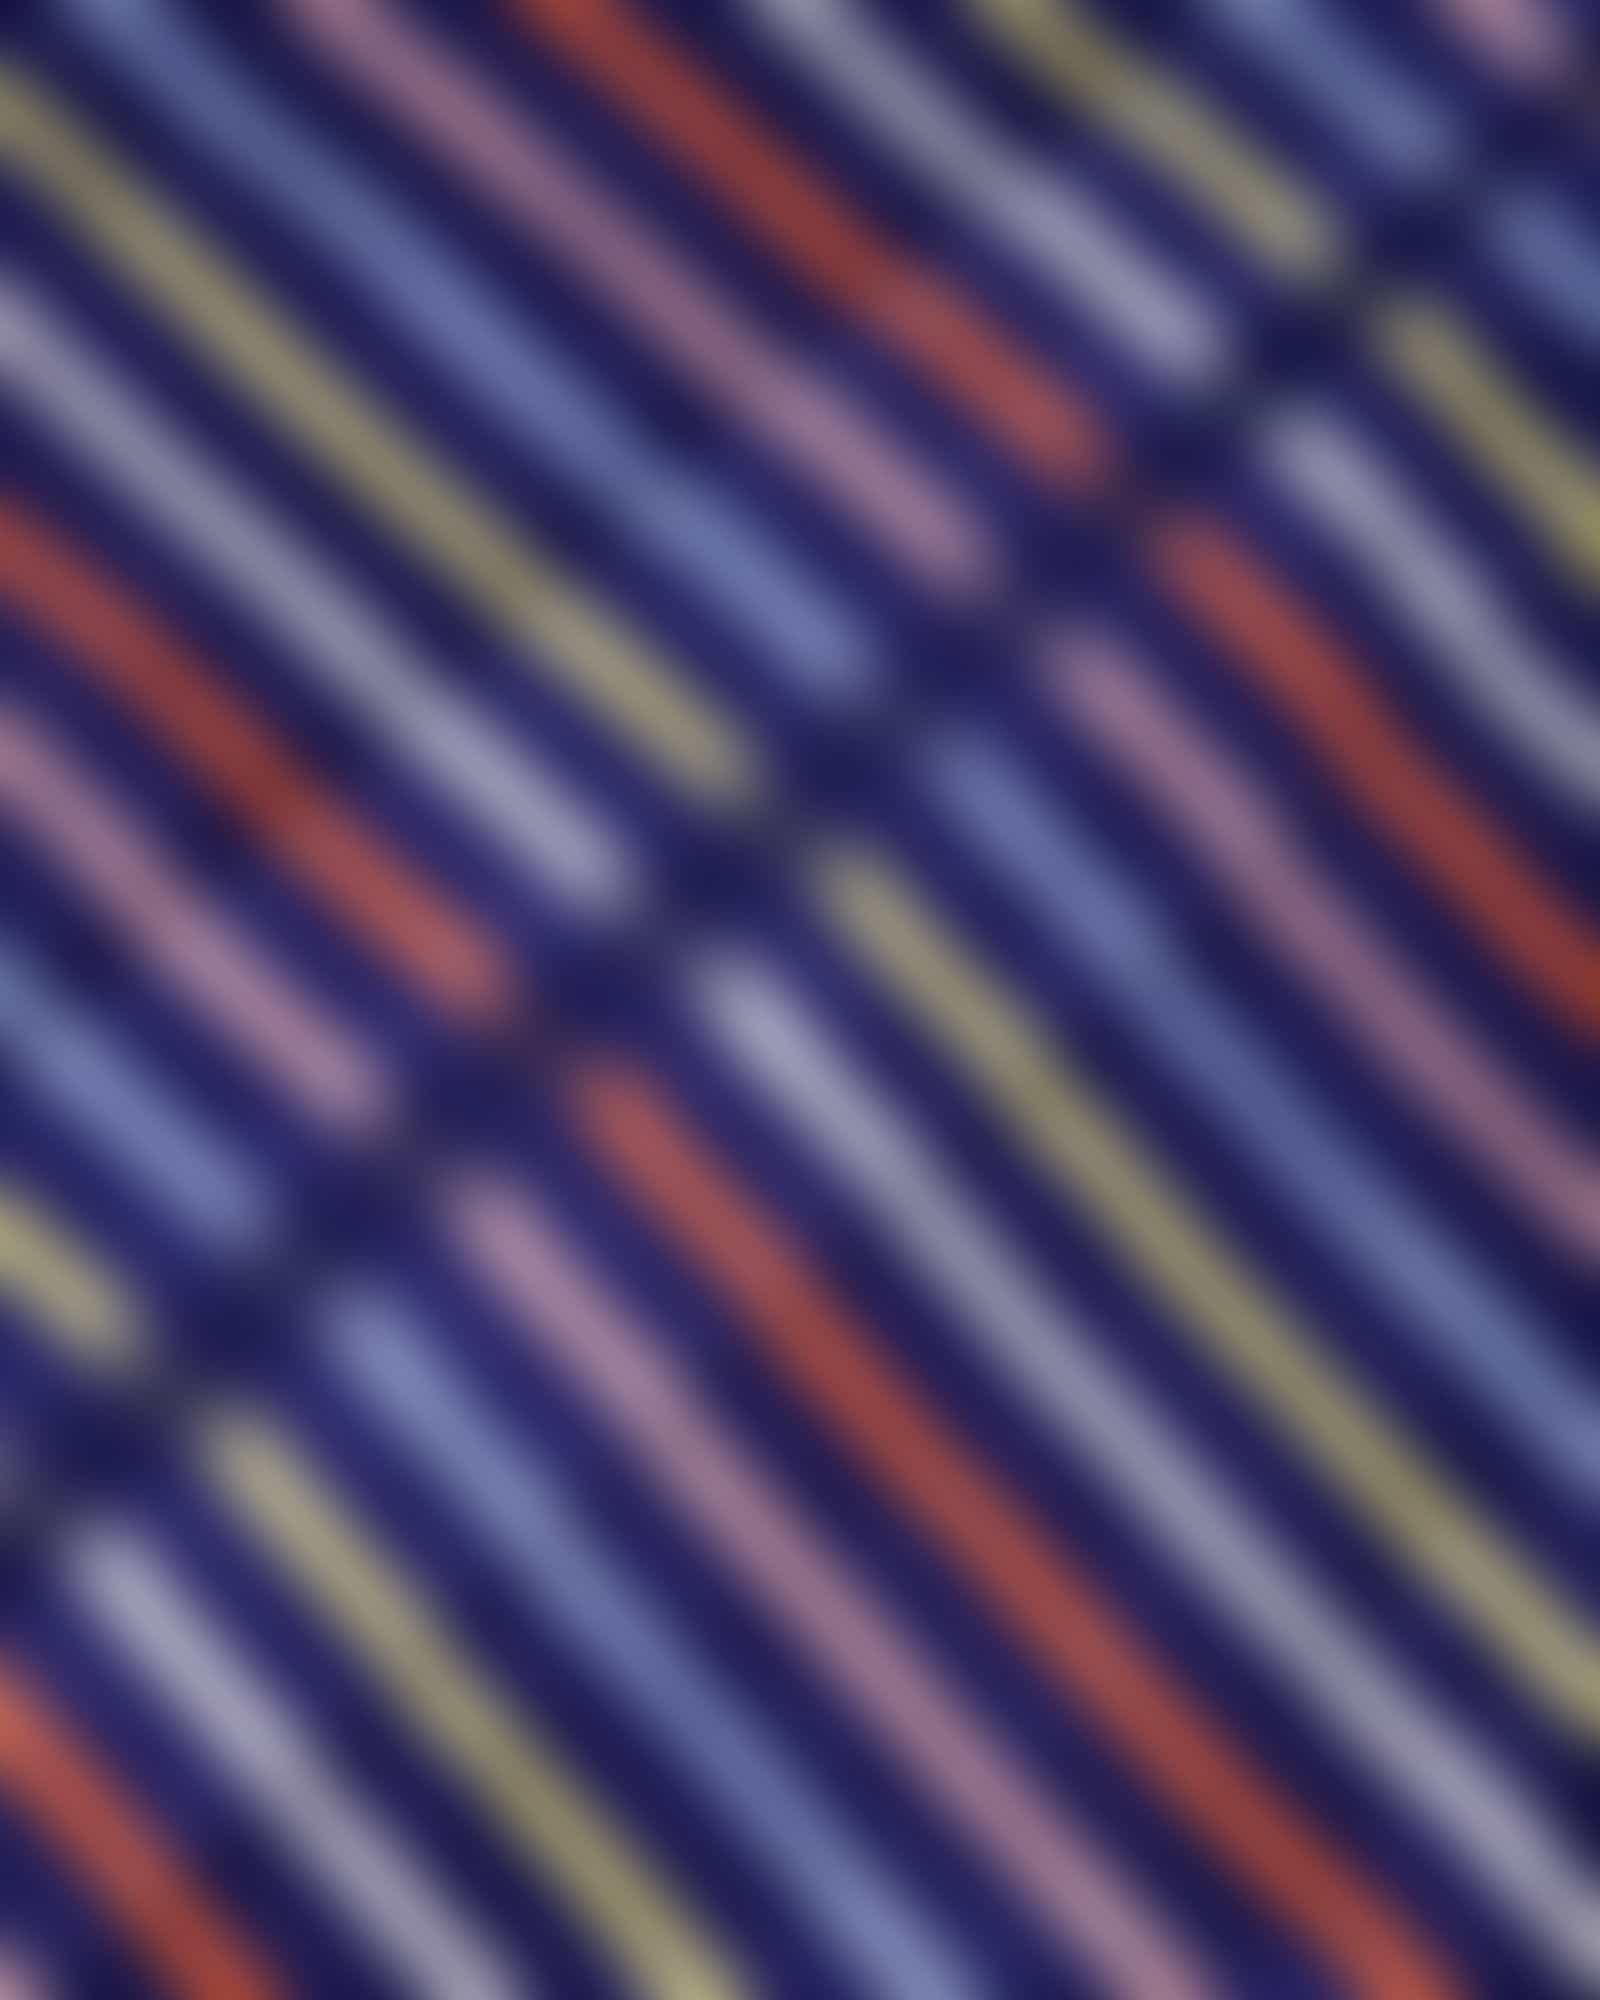 Cawö Damen Bademantel Kapuze 3344 - Farbe: blau-multicolor - 12 - M Detailbild 3